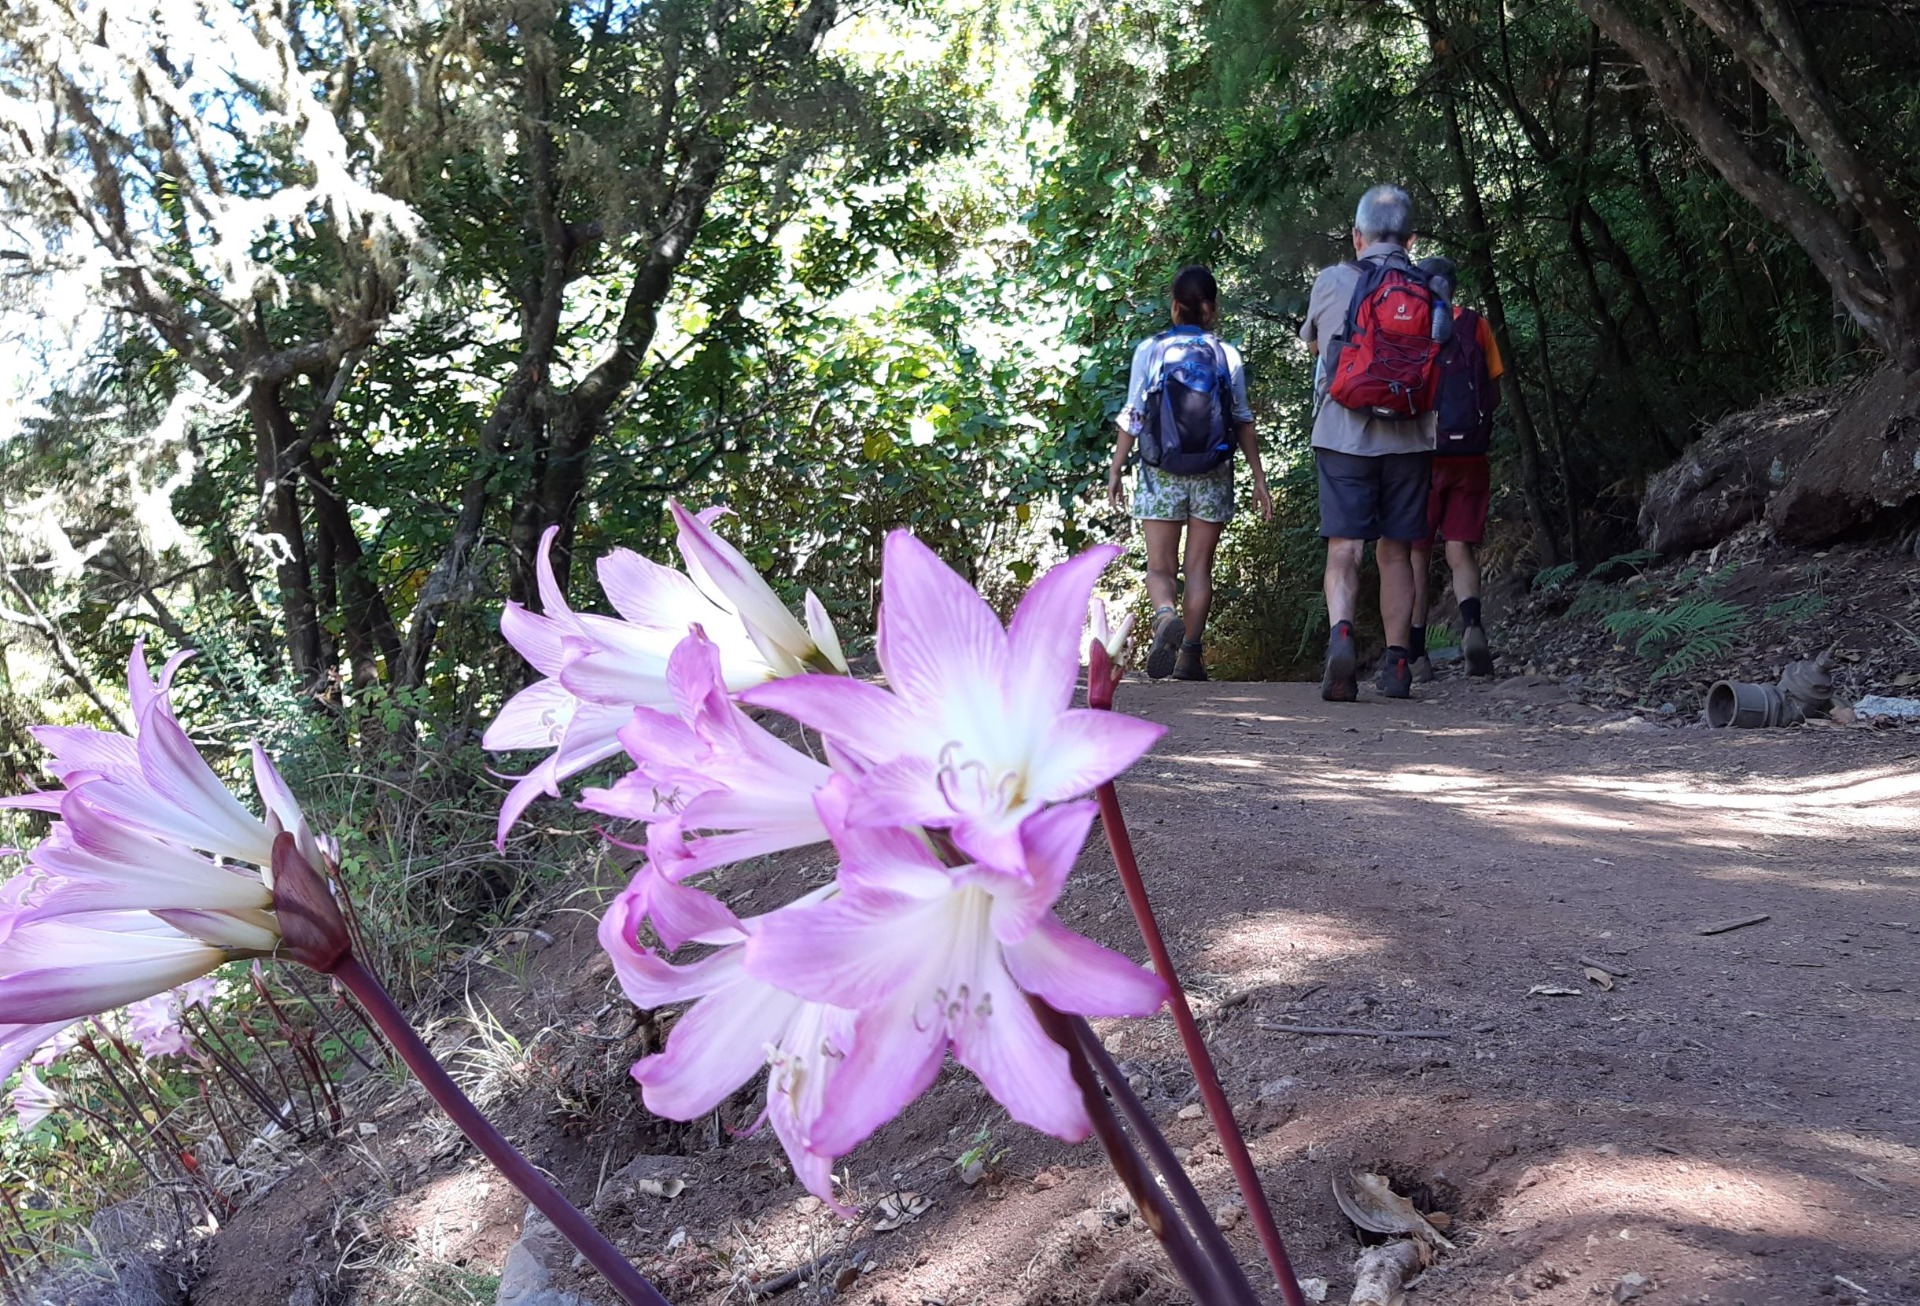  una flor en primer plano y varios turistas caminando de fondo por un sendero